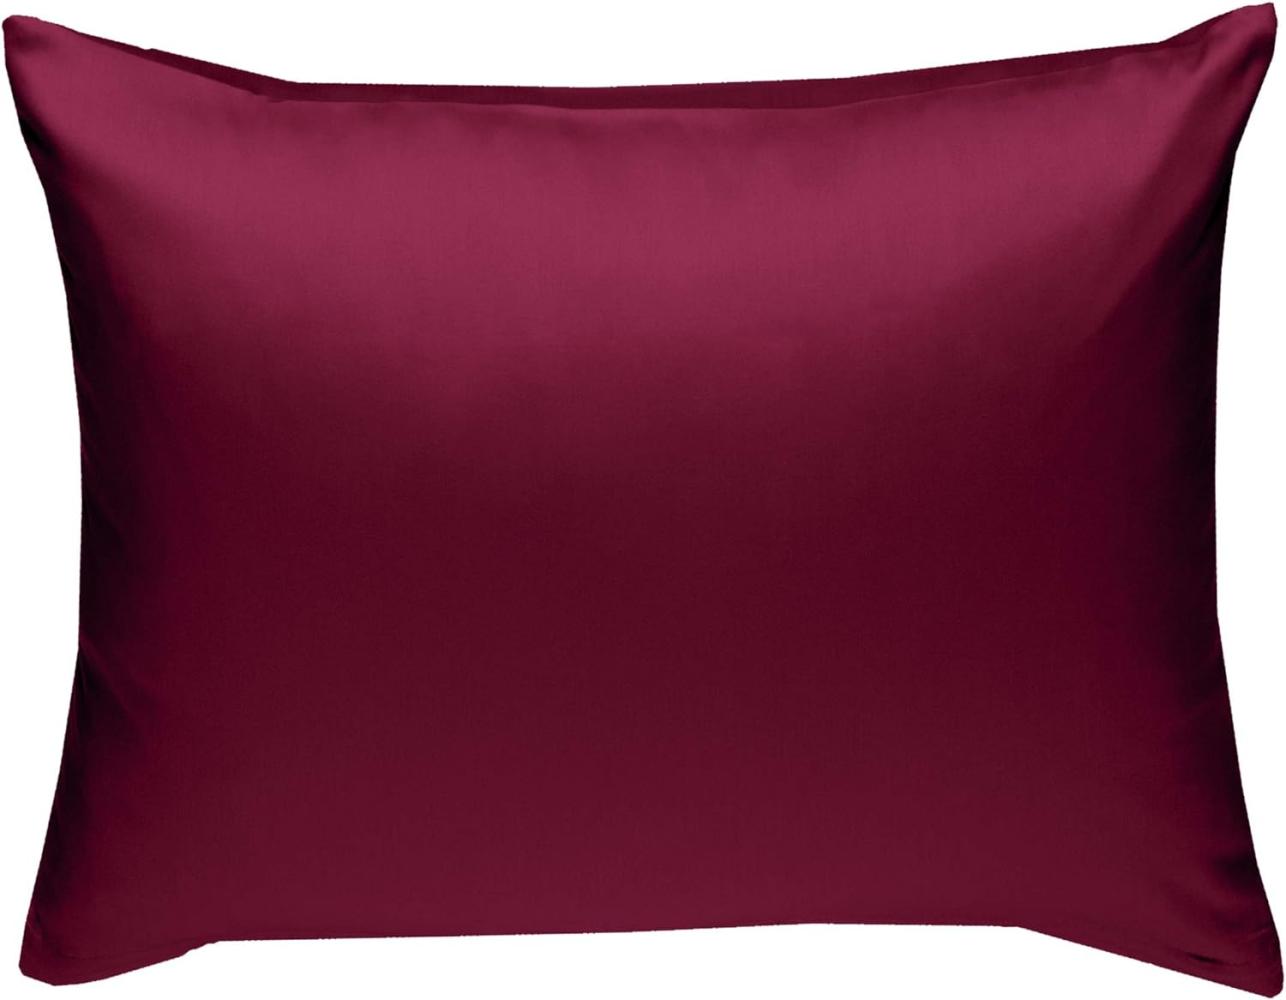 Bettwaesche-mit-Stil Mako-Satin / Baumwollsatin Bettwäsche uni / einfarbig pink Kissenbezug 70x90 cm Bild 1